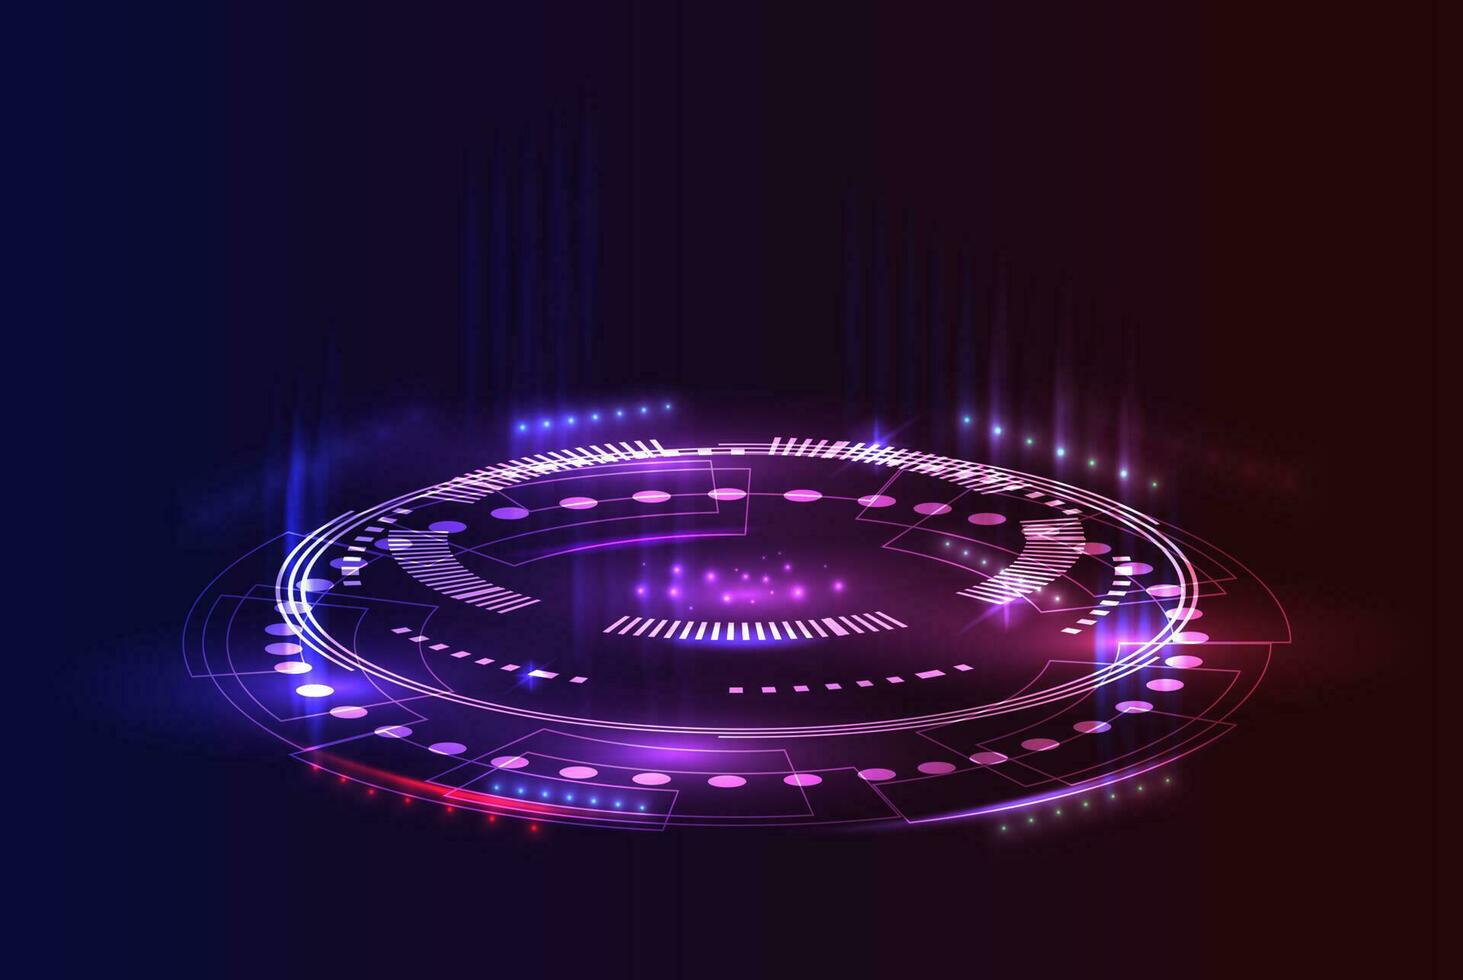 ficção científica futurista em fundo roxo neon. portal de círculo roxo com luzes e brilhos. vetor